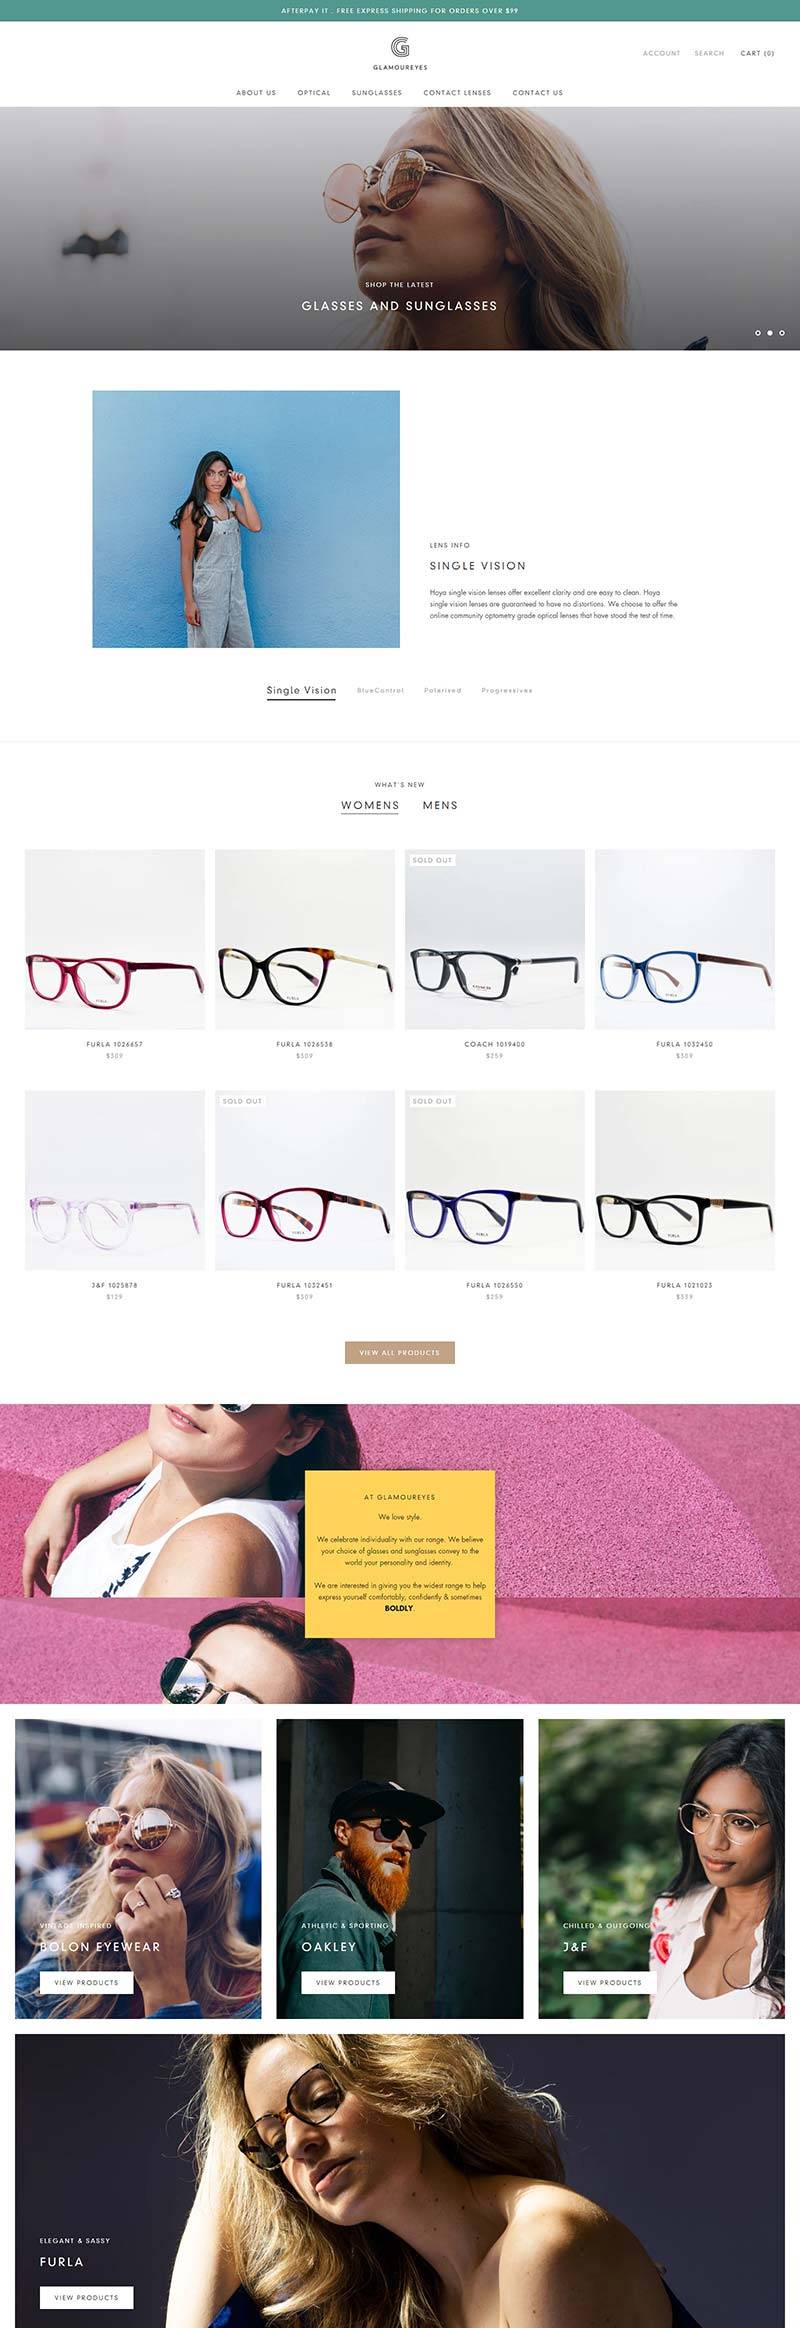 Glamoureyes 澳大利亚品牌眼镜太阳镜购物网站